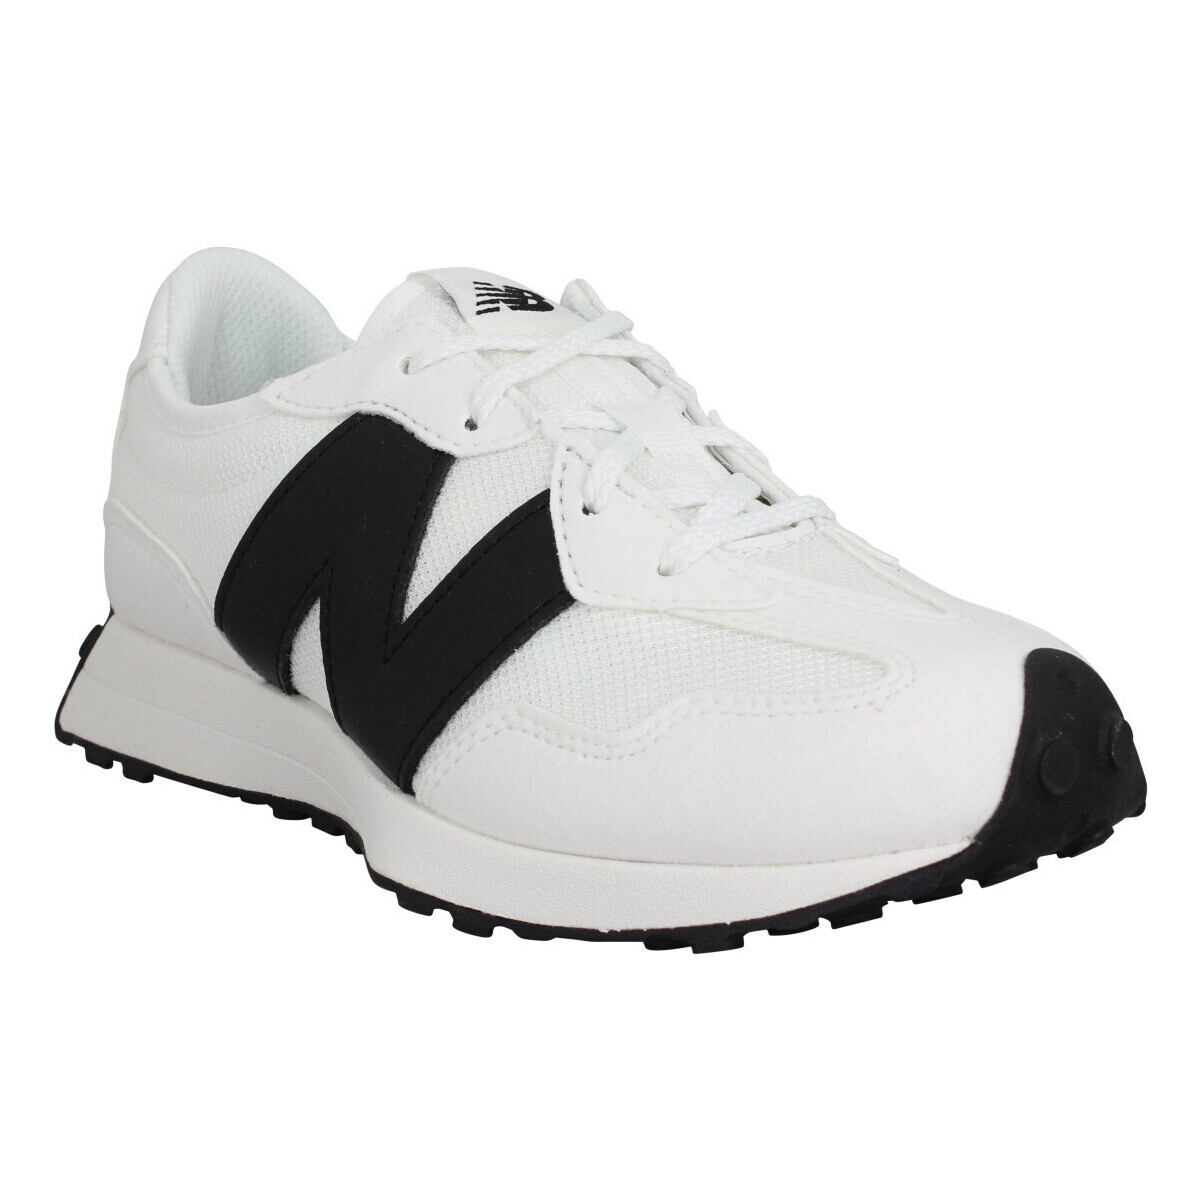 Pantofi Copii Sneakers New Balance 327 Toile Enfant White Black Alb